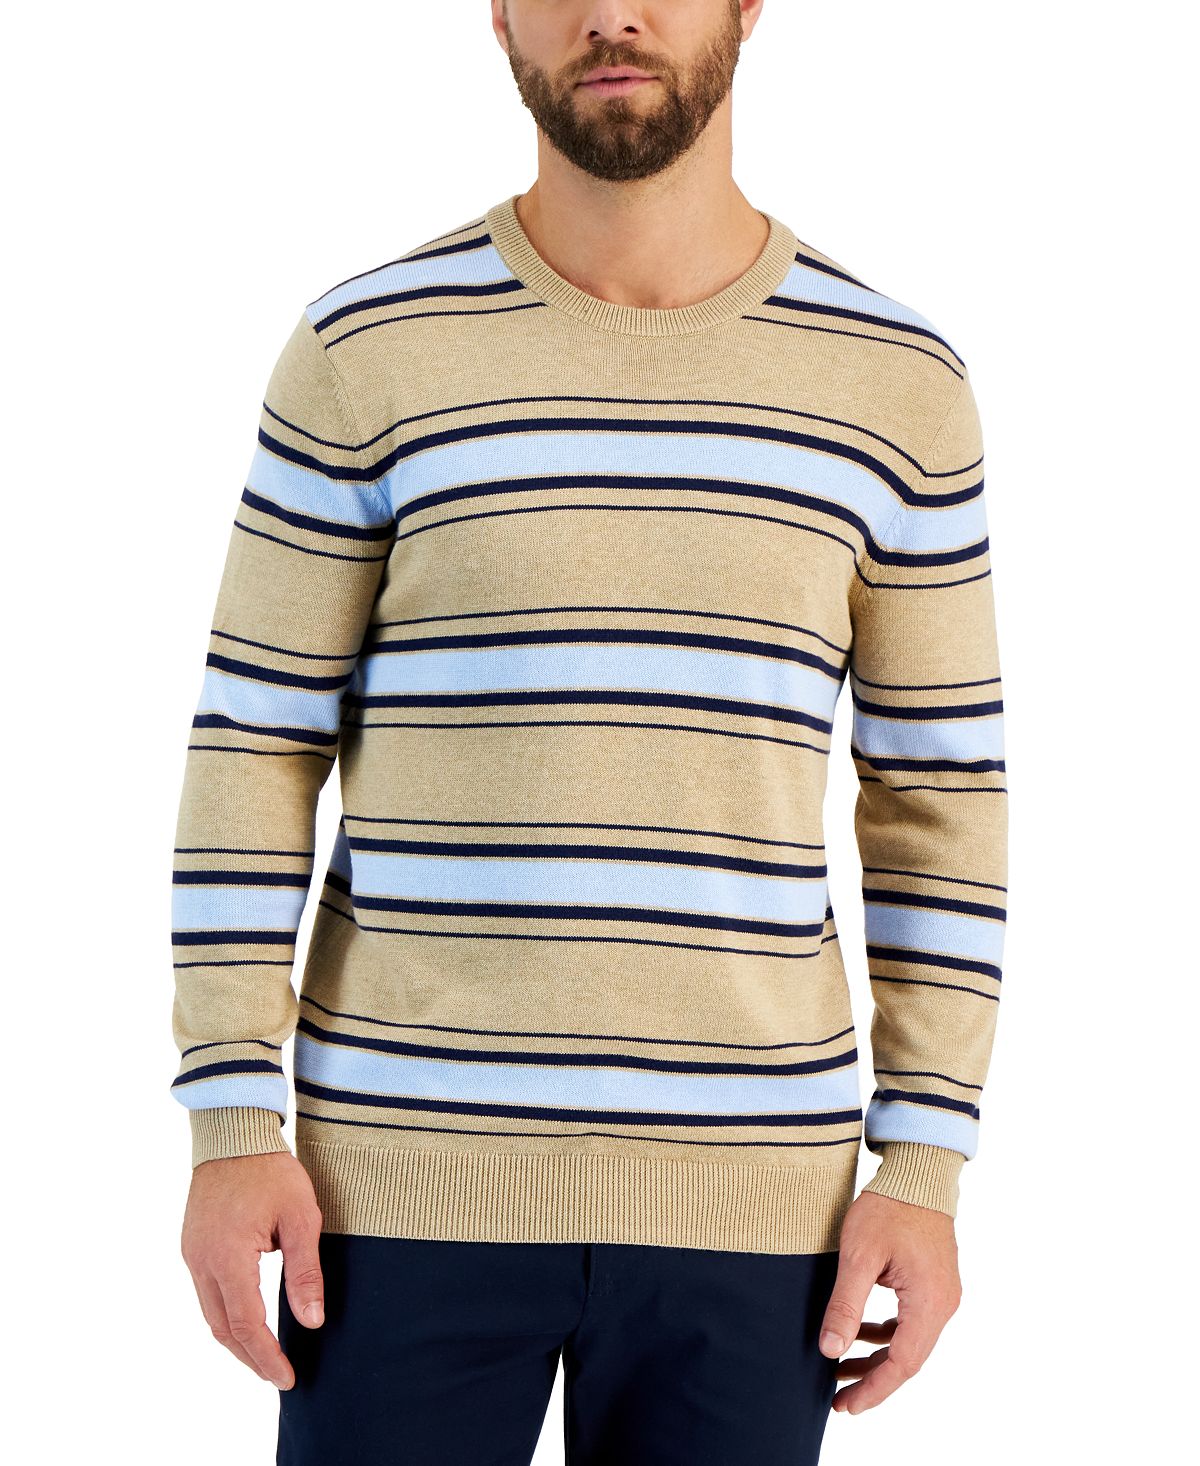 Мужской свитер с круглым вырезом в приподнятую полоску и длинными рукавами Club Room koan knitwear свитер с круглым вырезом и узором из кос белый